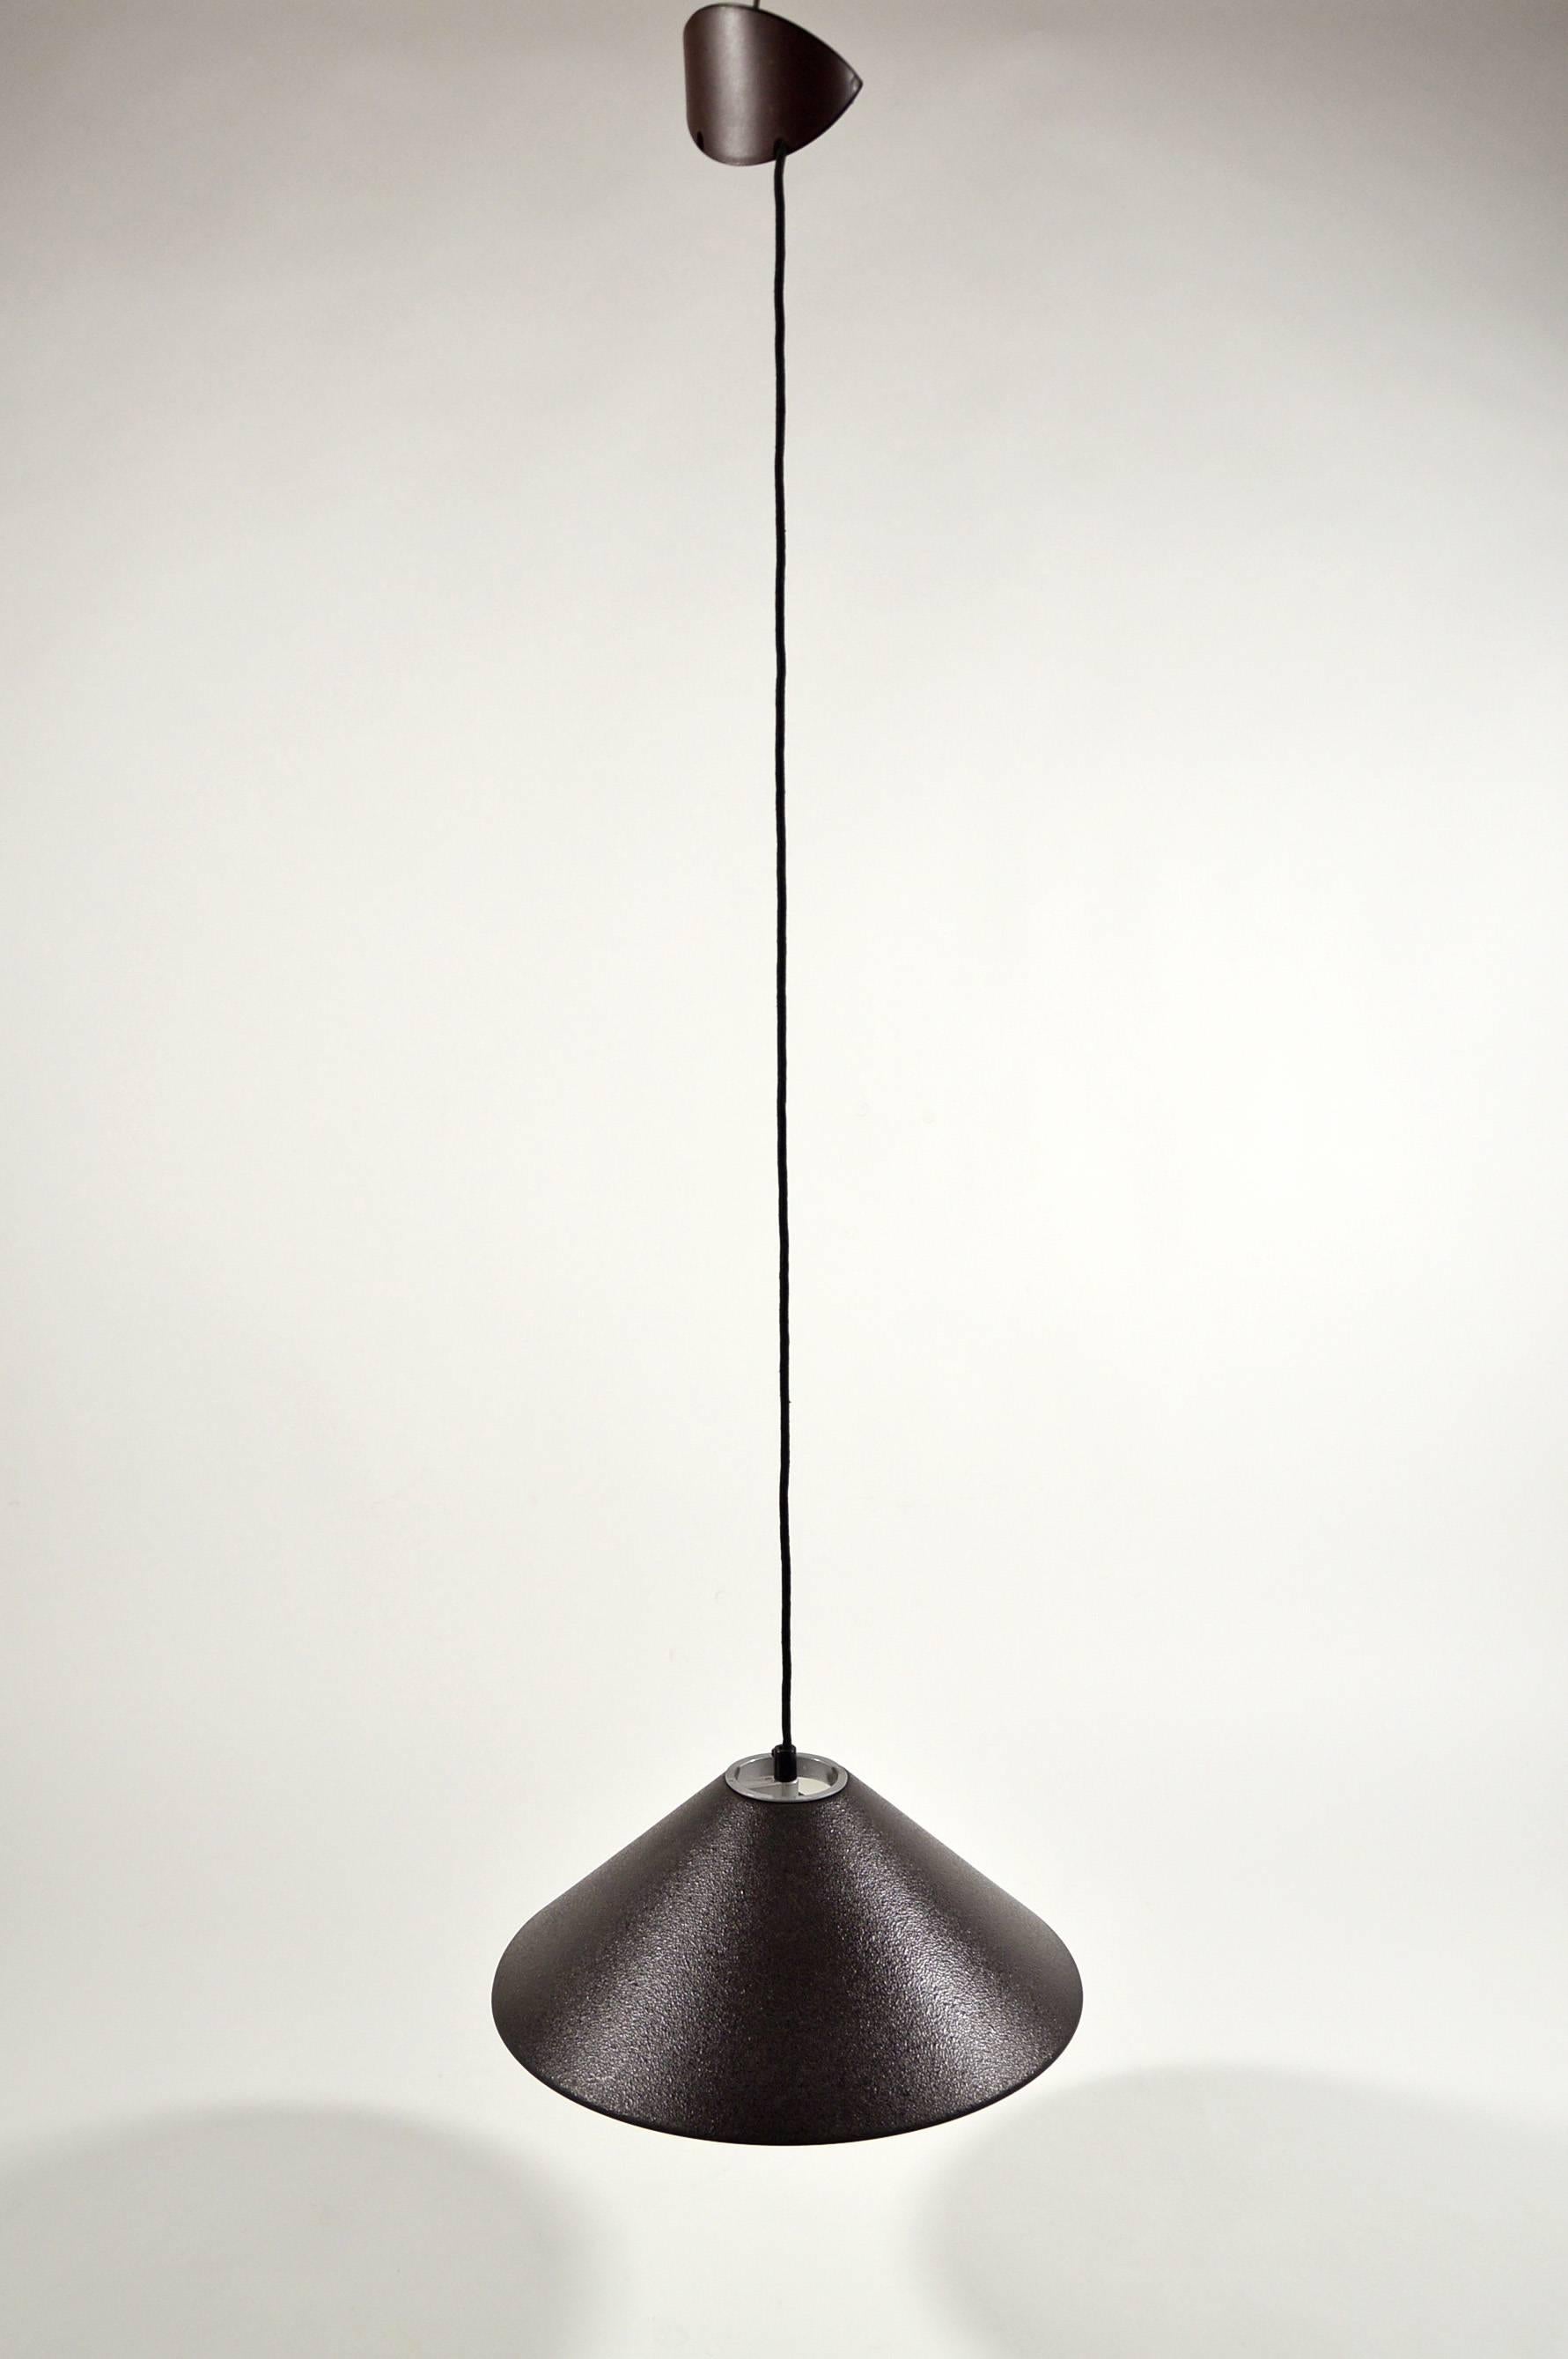 Lacquered Enzo Mari Aggregato Pendant Lamp for Artemide, 1976